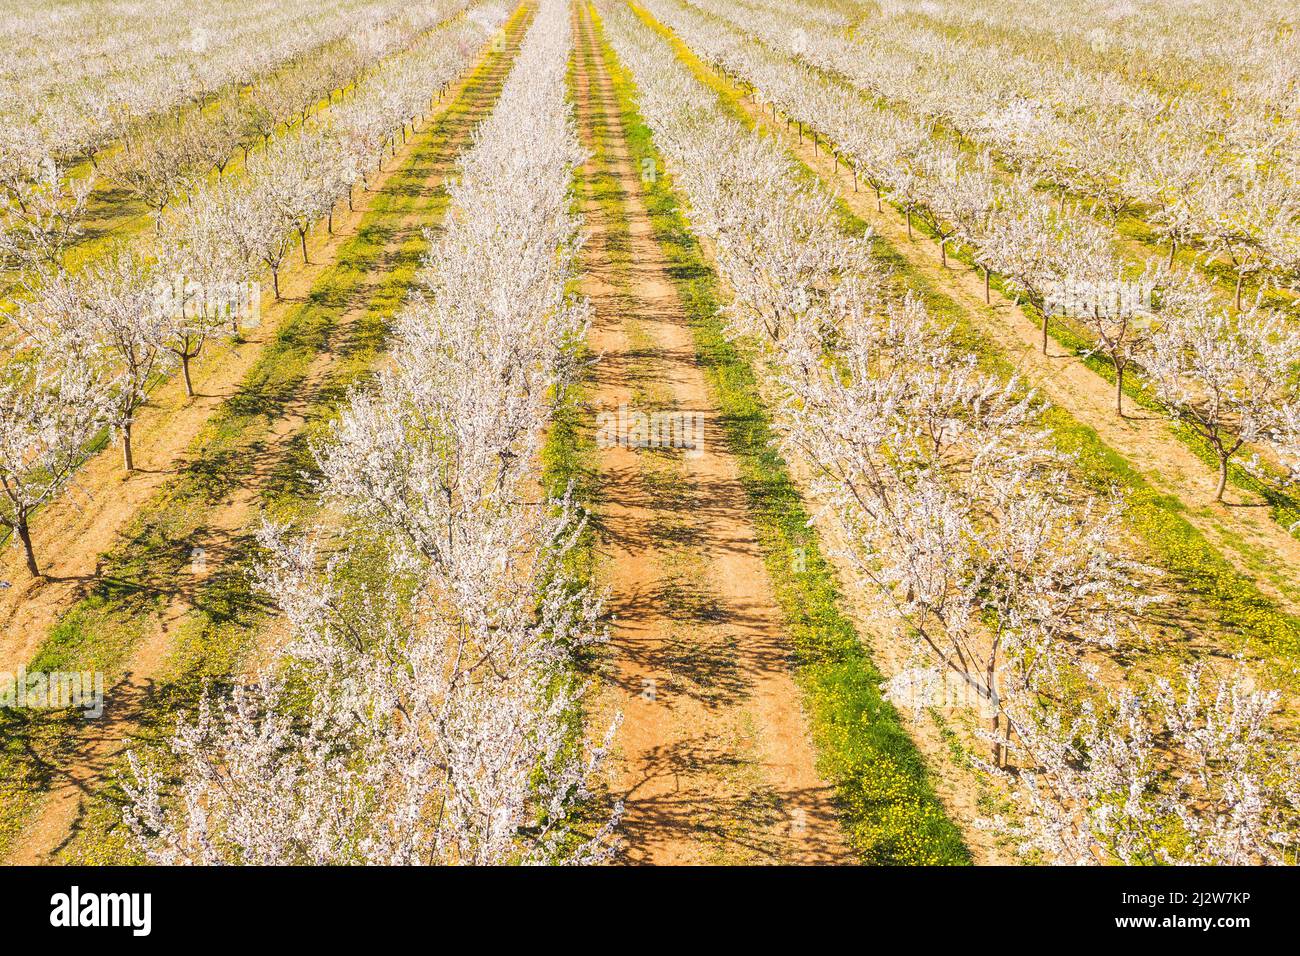 Une longue allée d'amandiers fleurira sur une plantation d'amandes, vue de drone Banque D'Images